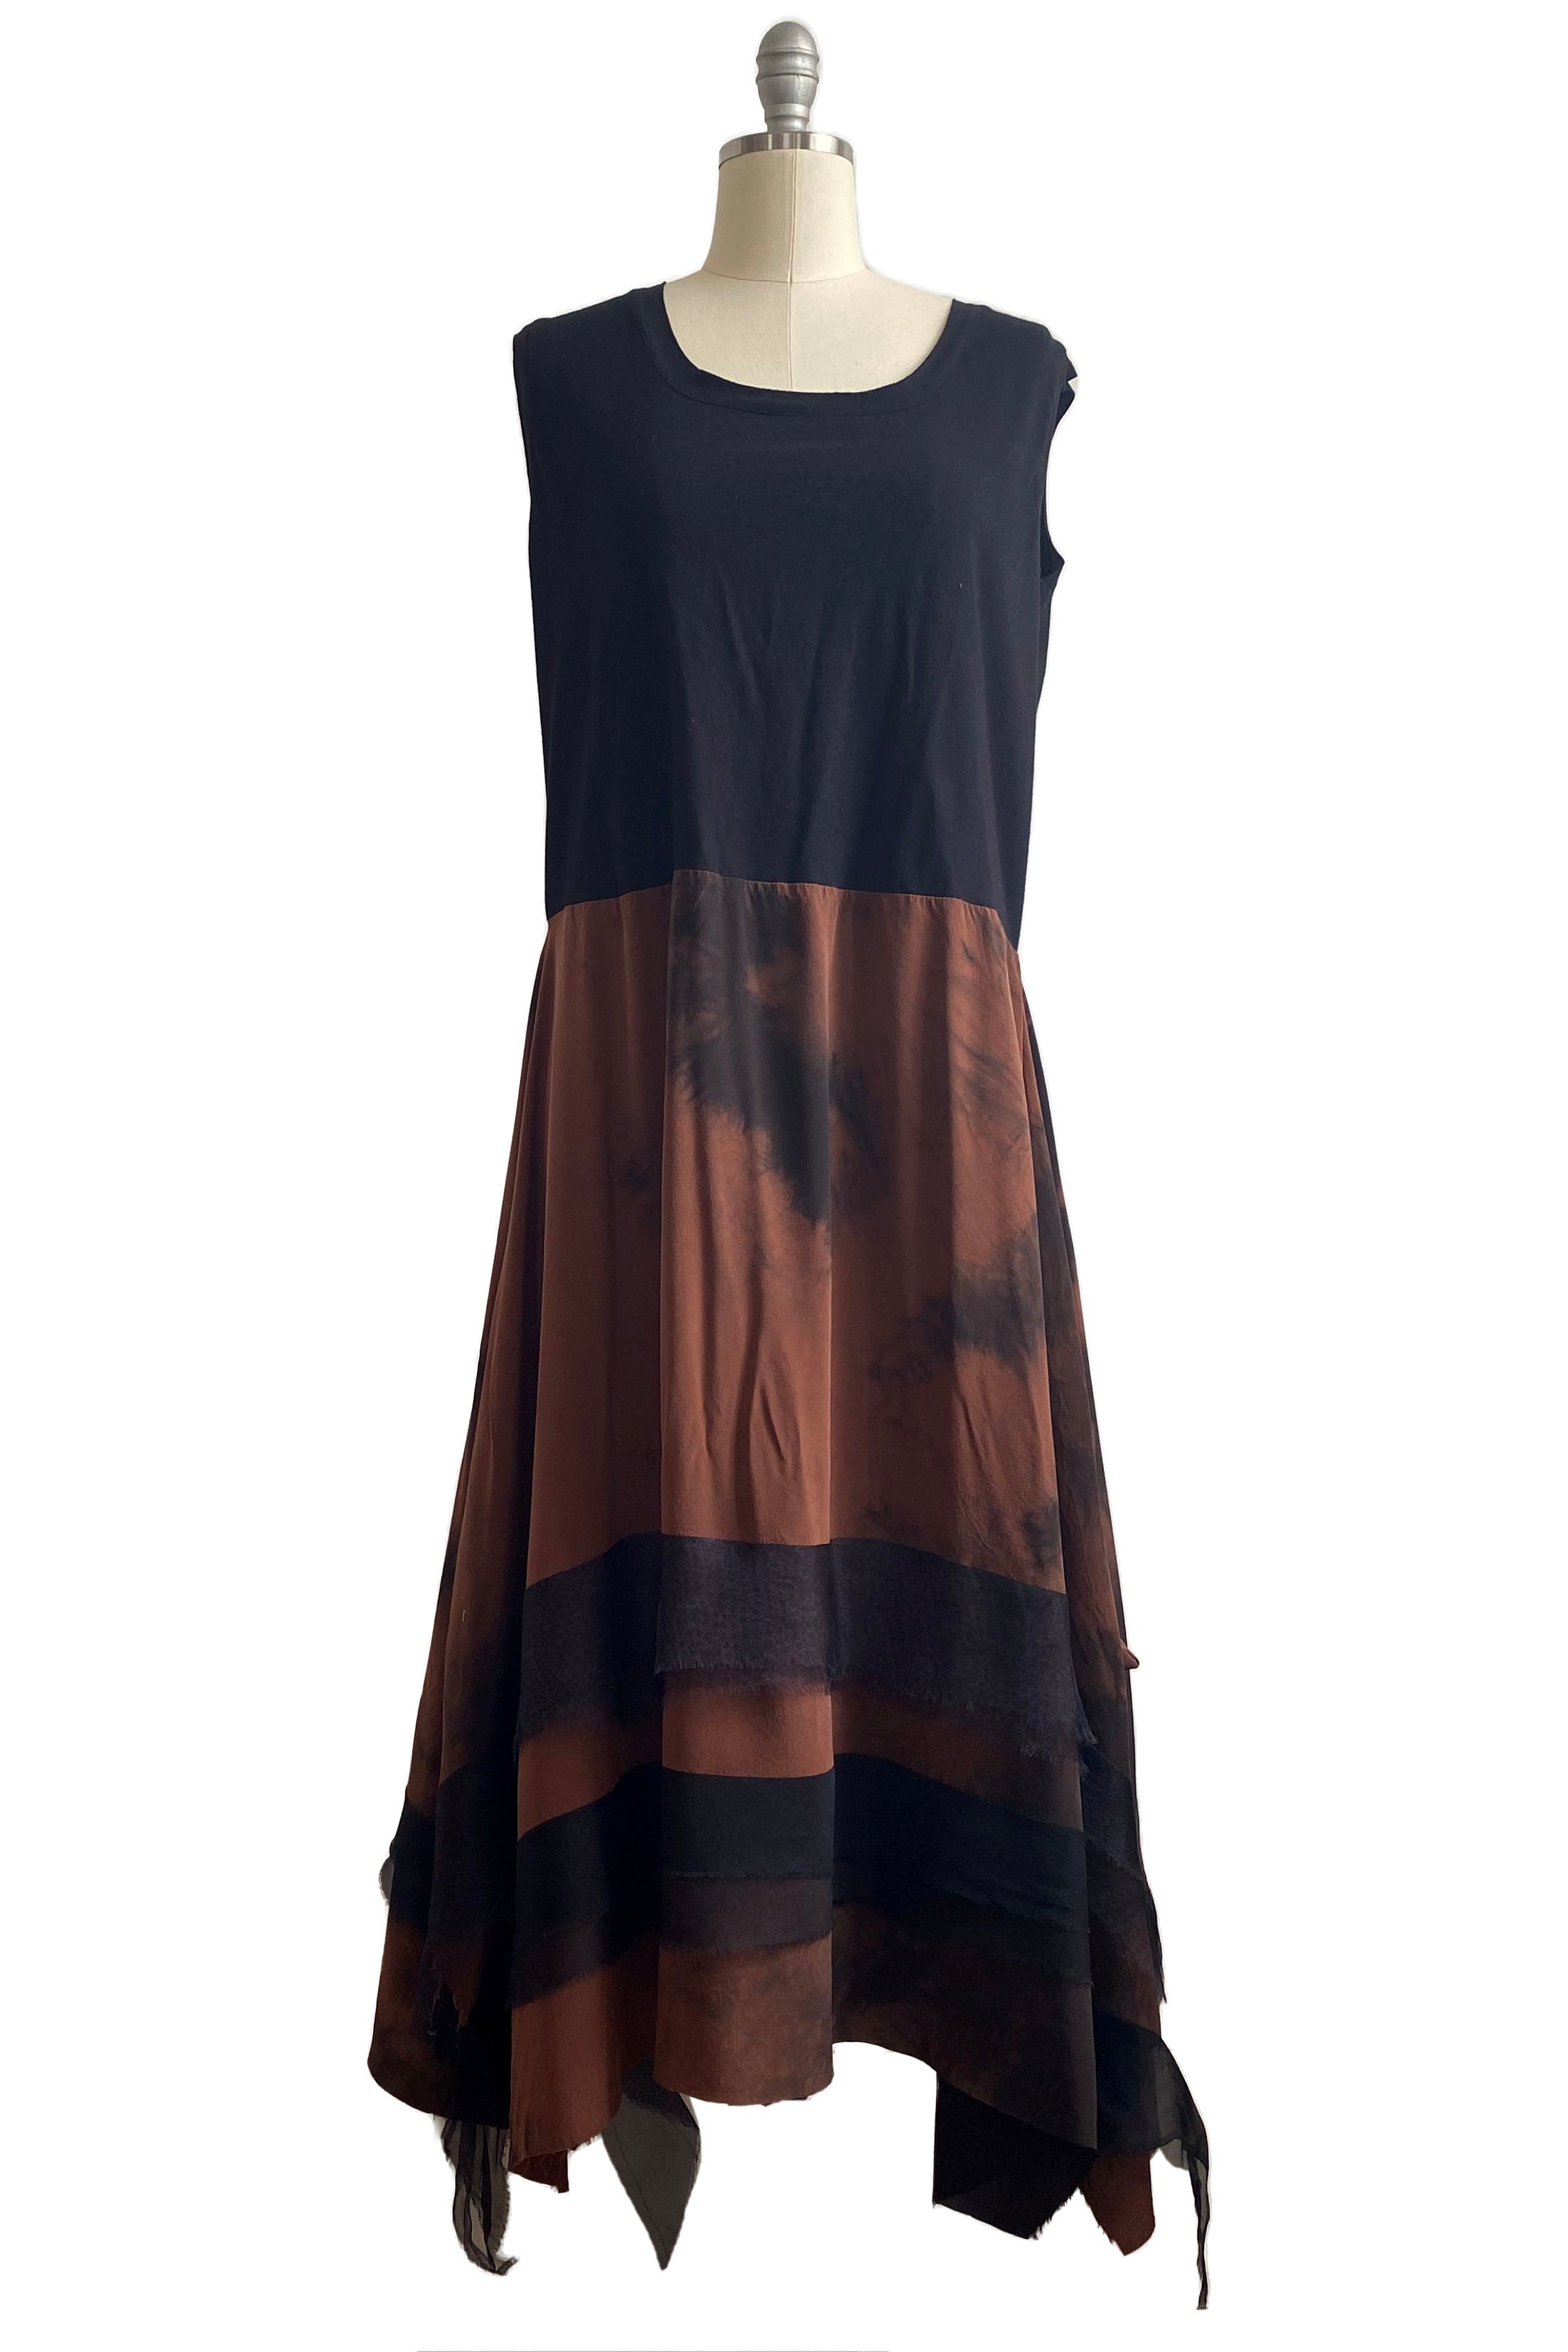 Montmartre Dress w/ Jersey Top Chestnut Tie Dye - M/L